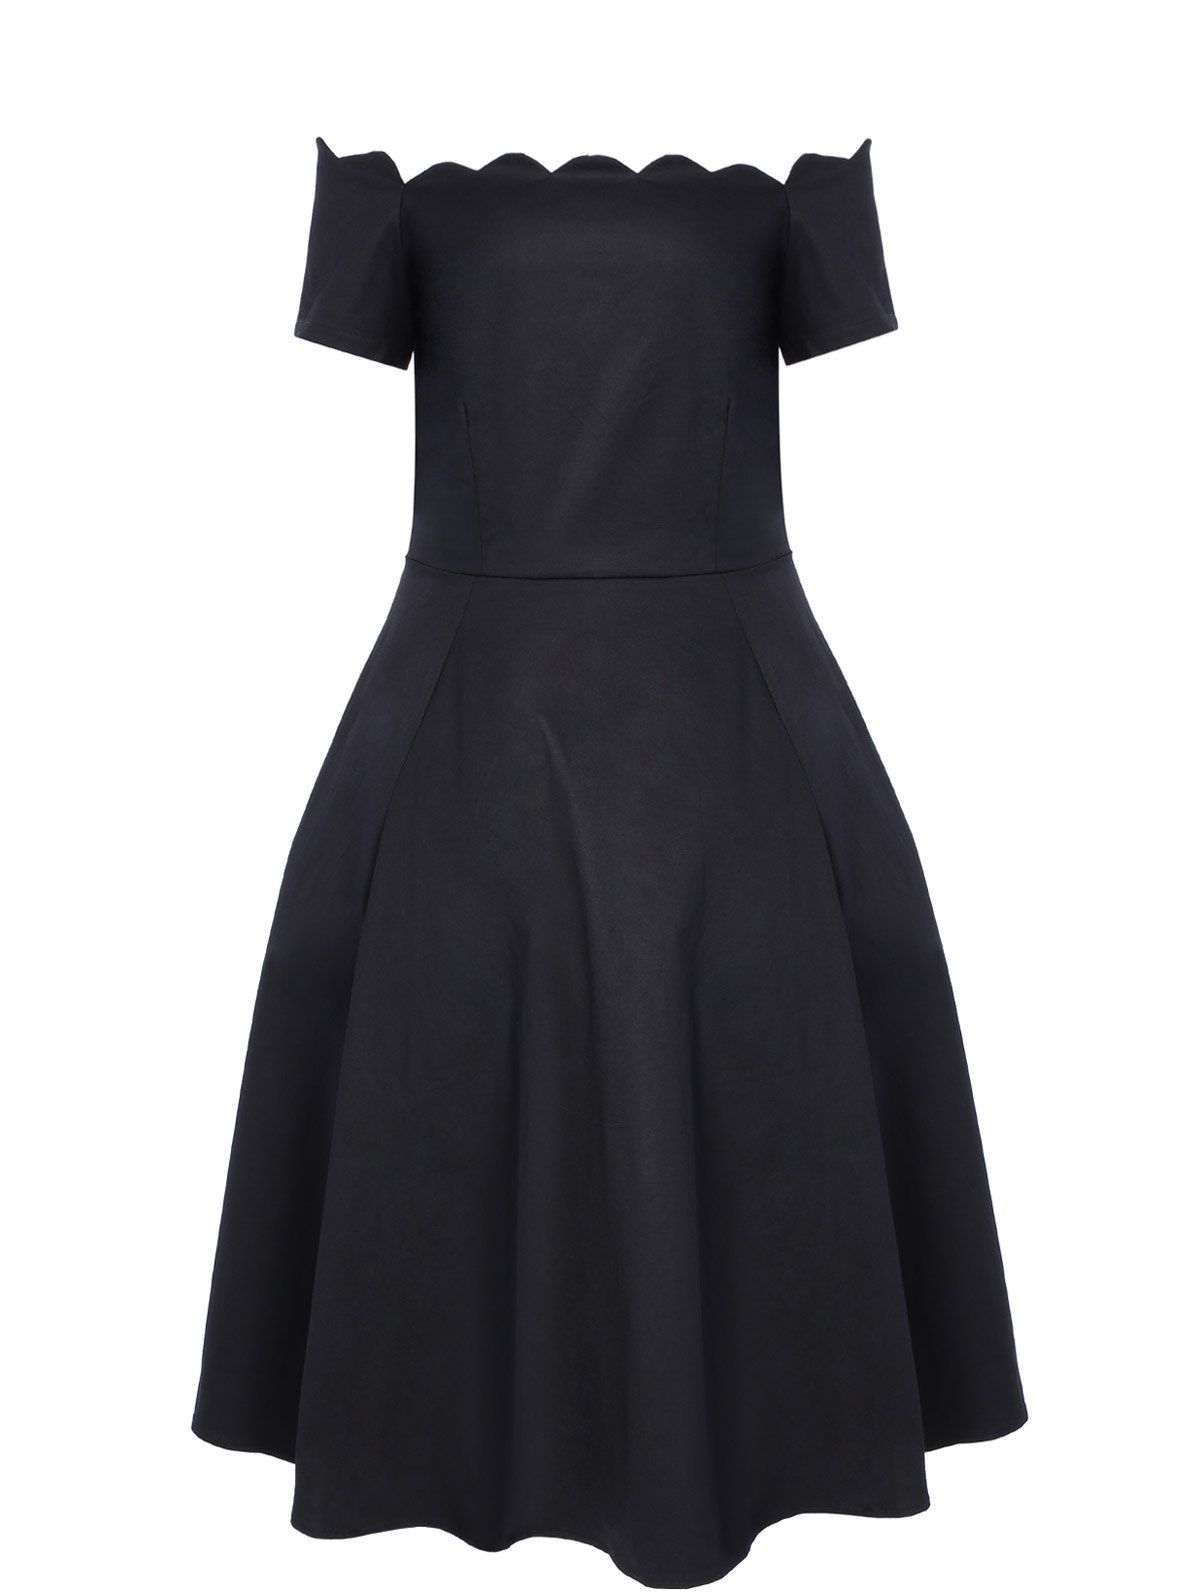 [17% OFF] 2021 Vintage Boat Neck Ball Gown Dress In BLACK | DressLily